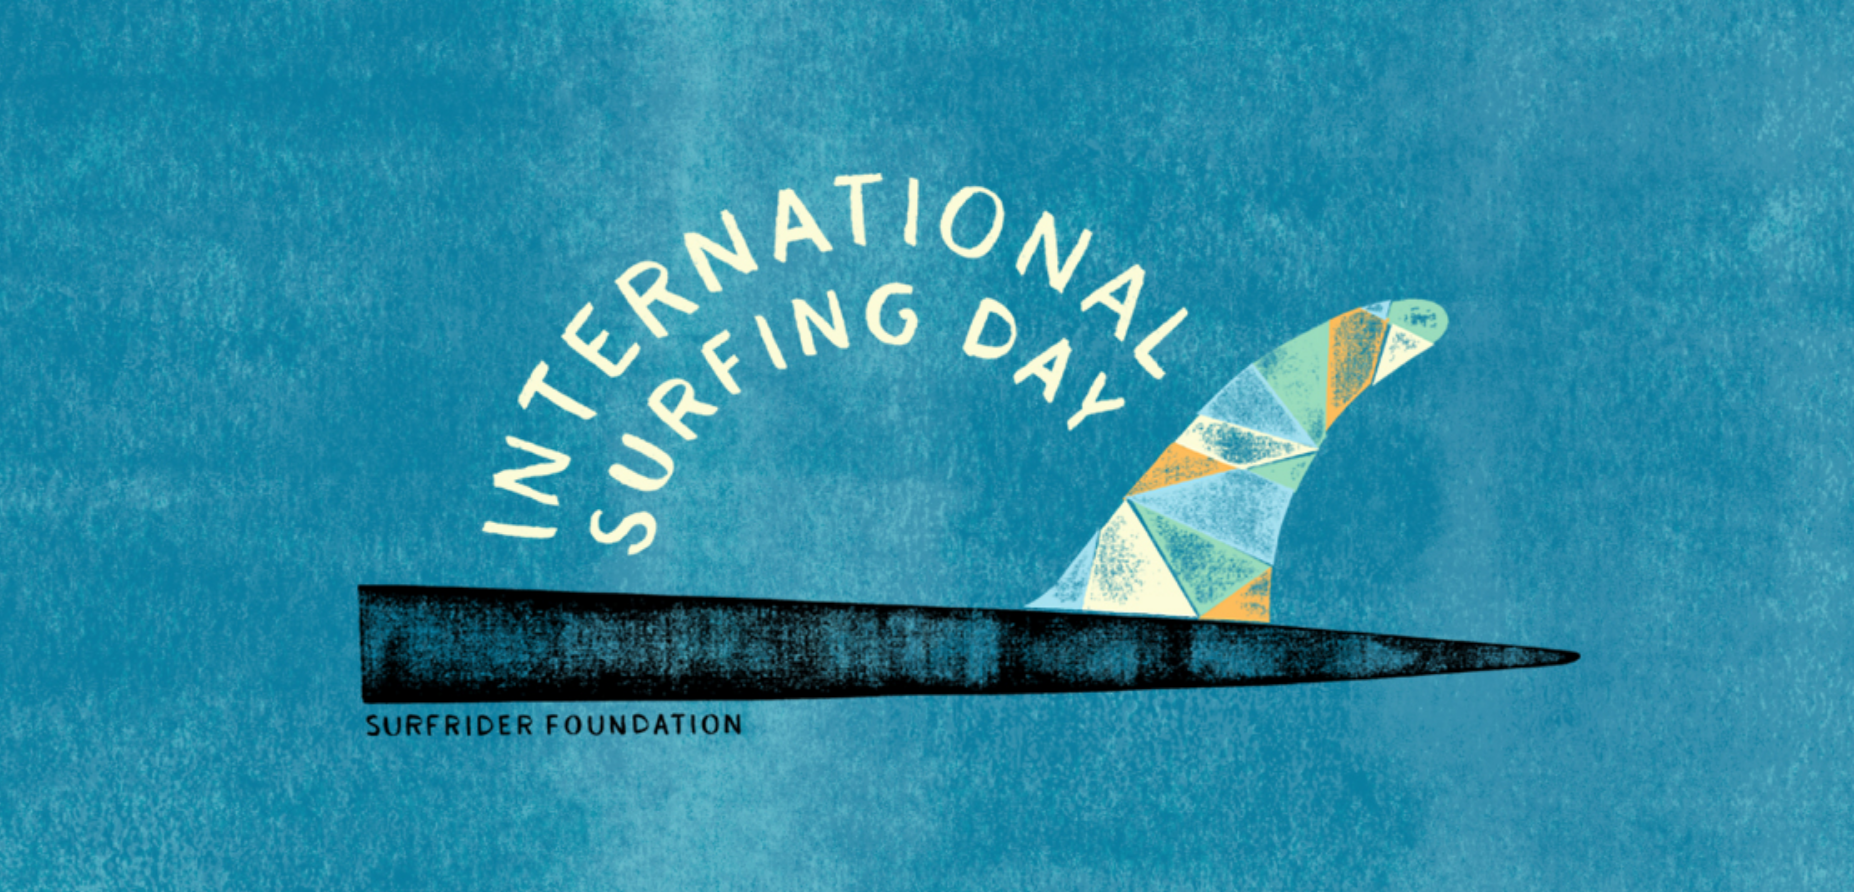 Surfrider Foundation International Surfing Day 2018